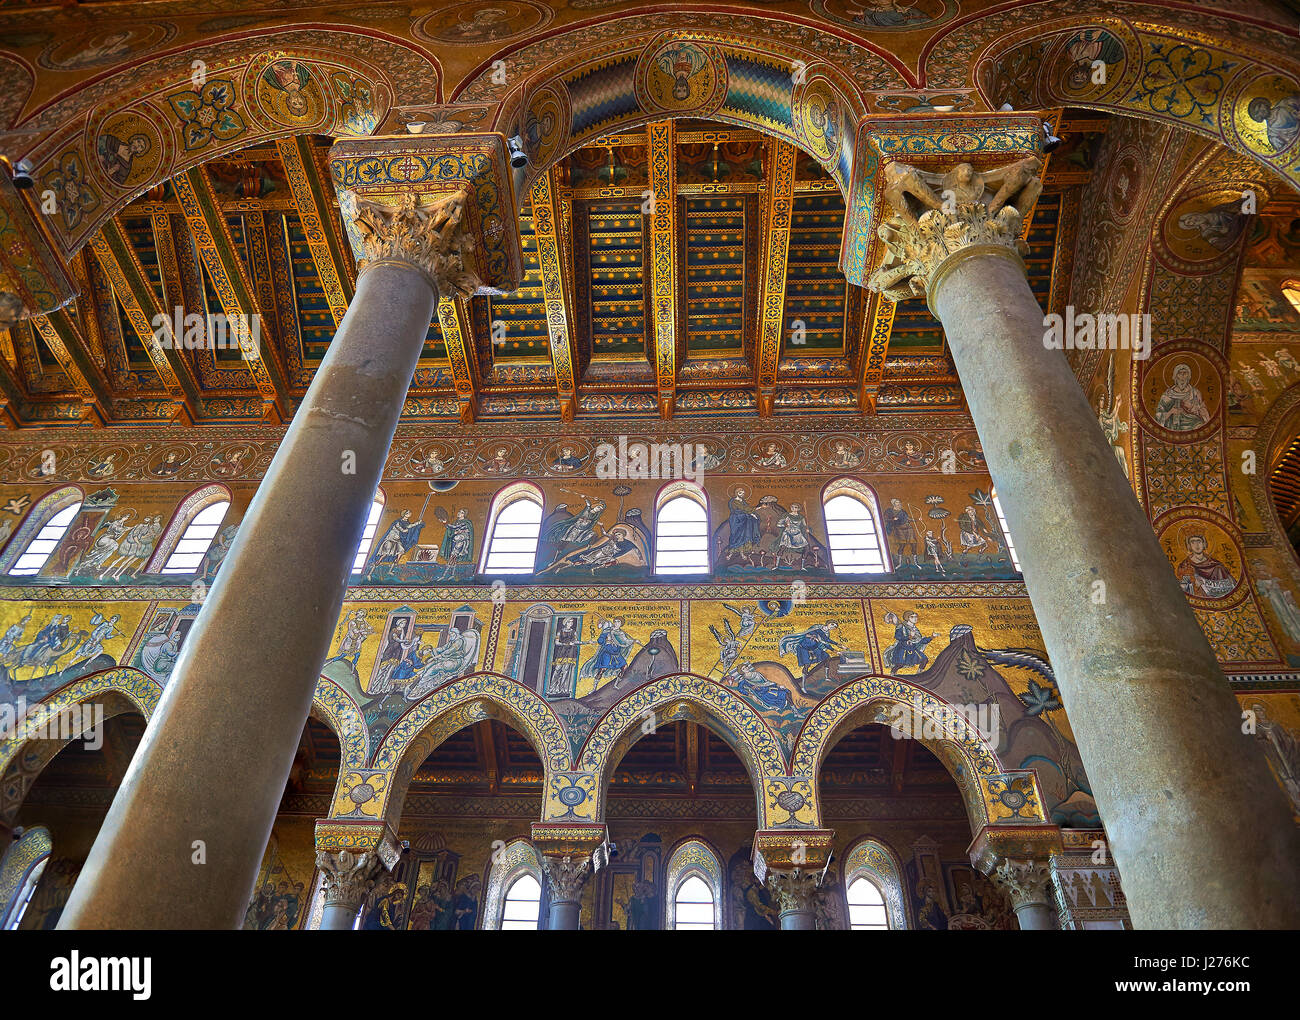 Mosaïques de la cathédrale médiévale d'Norman-Byzantine de Monreale, province de Palerme, Sicile, Italie. Banque D'Images